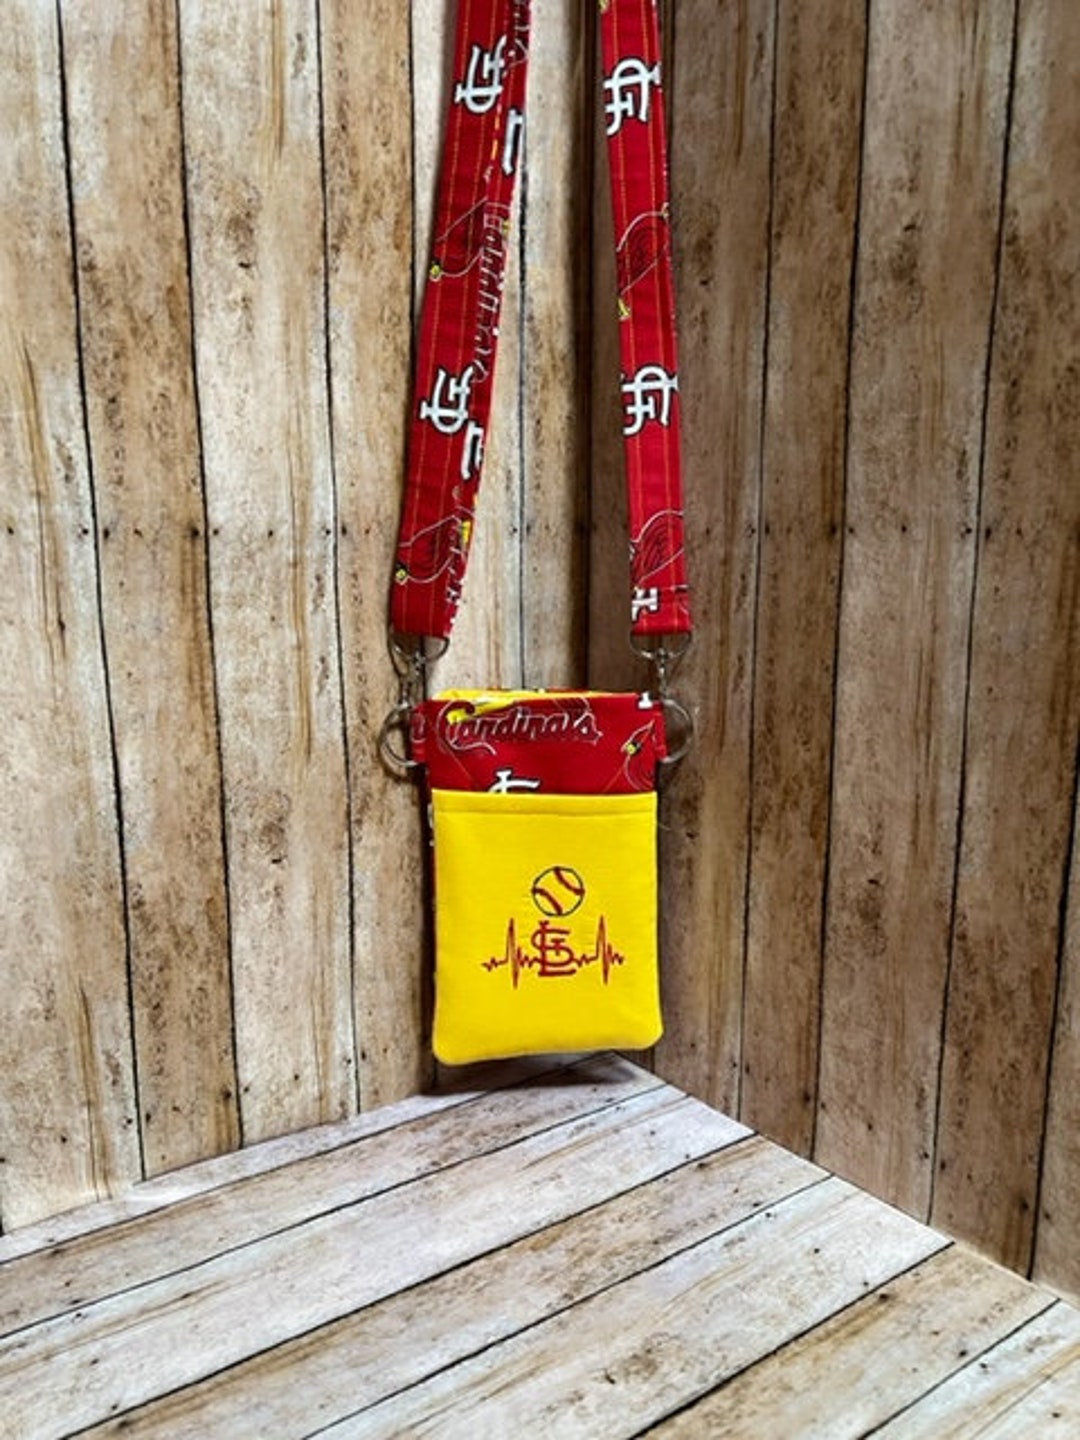 St. Louis Cardinals Phone Carrier Bag Purse Crossbody